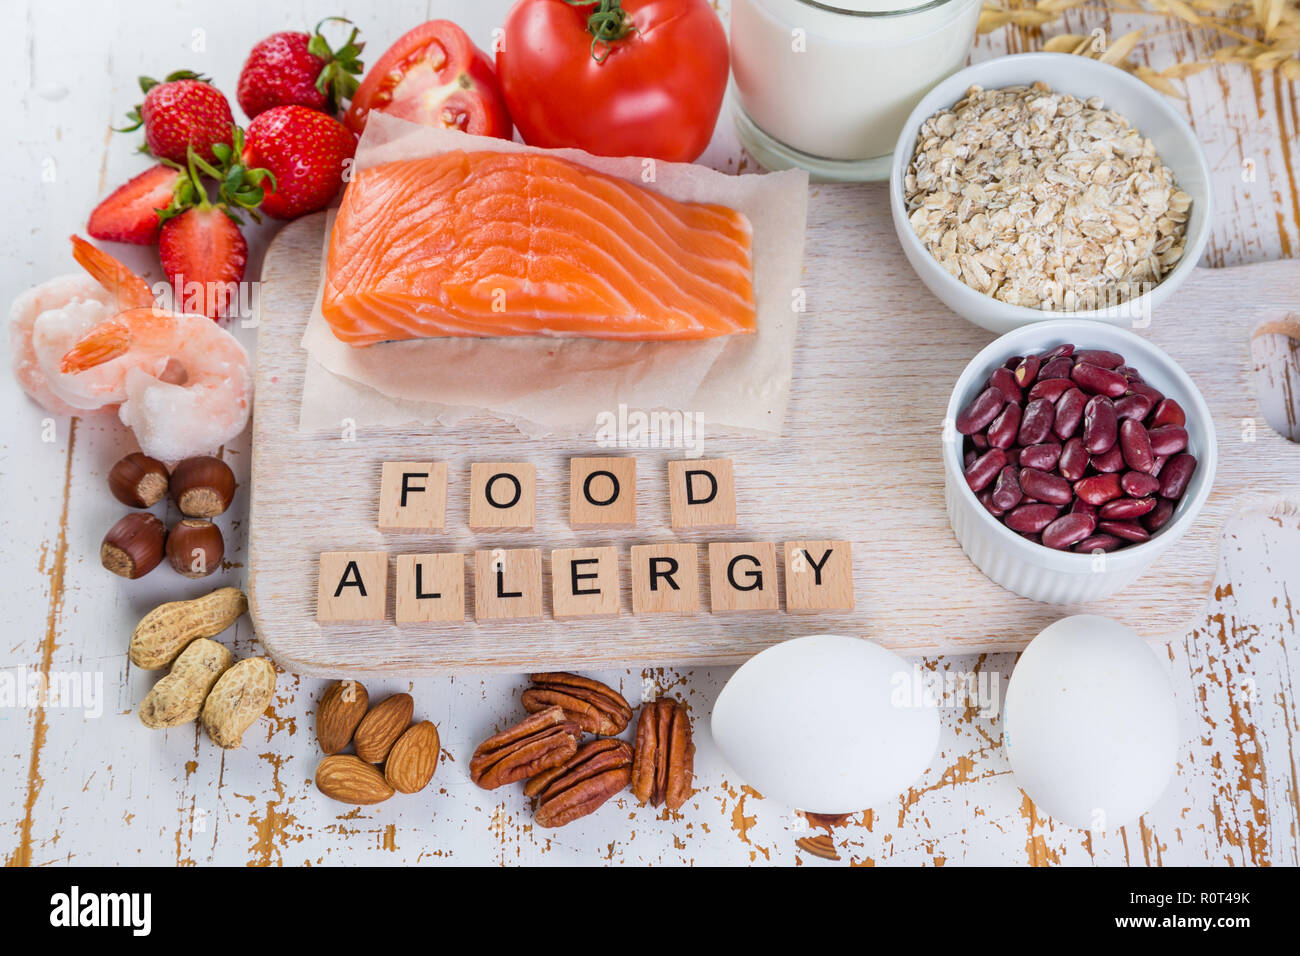 Allergie alimentari - Concetto di alimentare con i principali allergeni Foto Stock